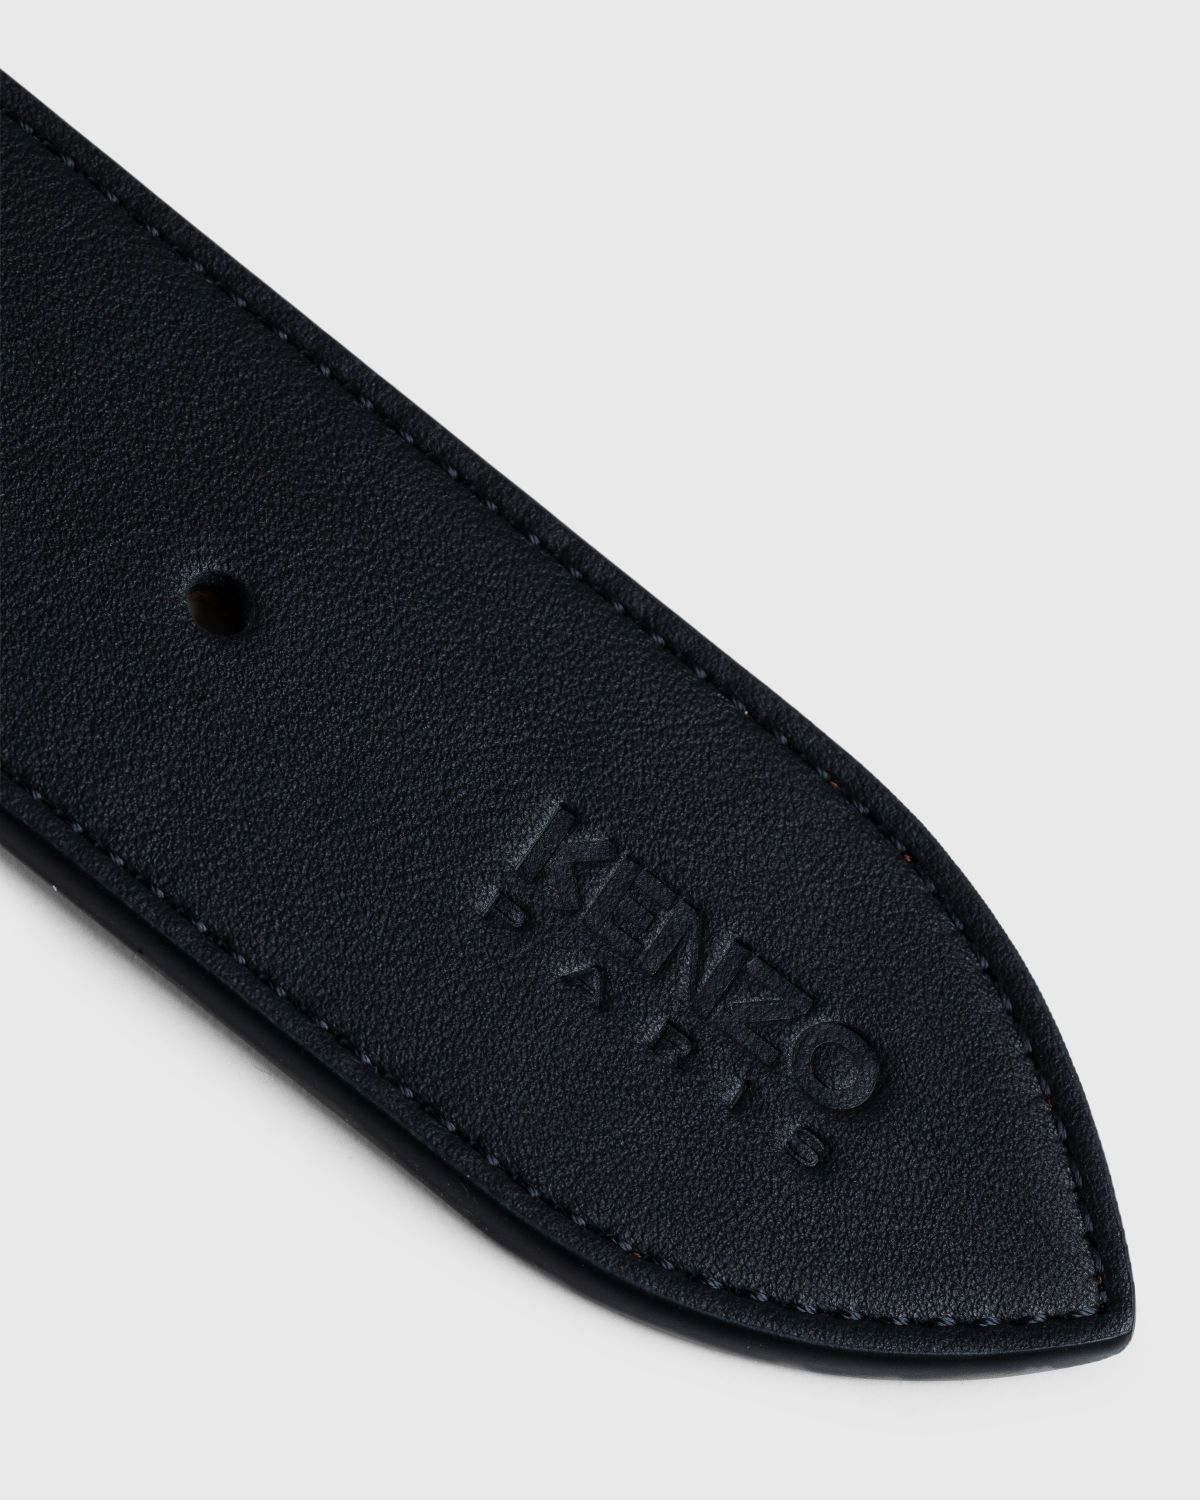 Kenzo – Belt Black - Belts - Black - Image 2